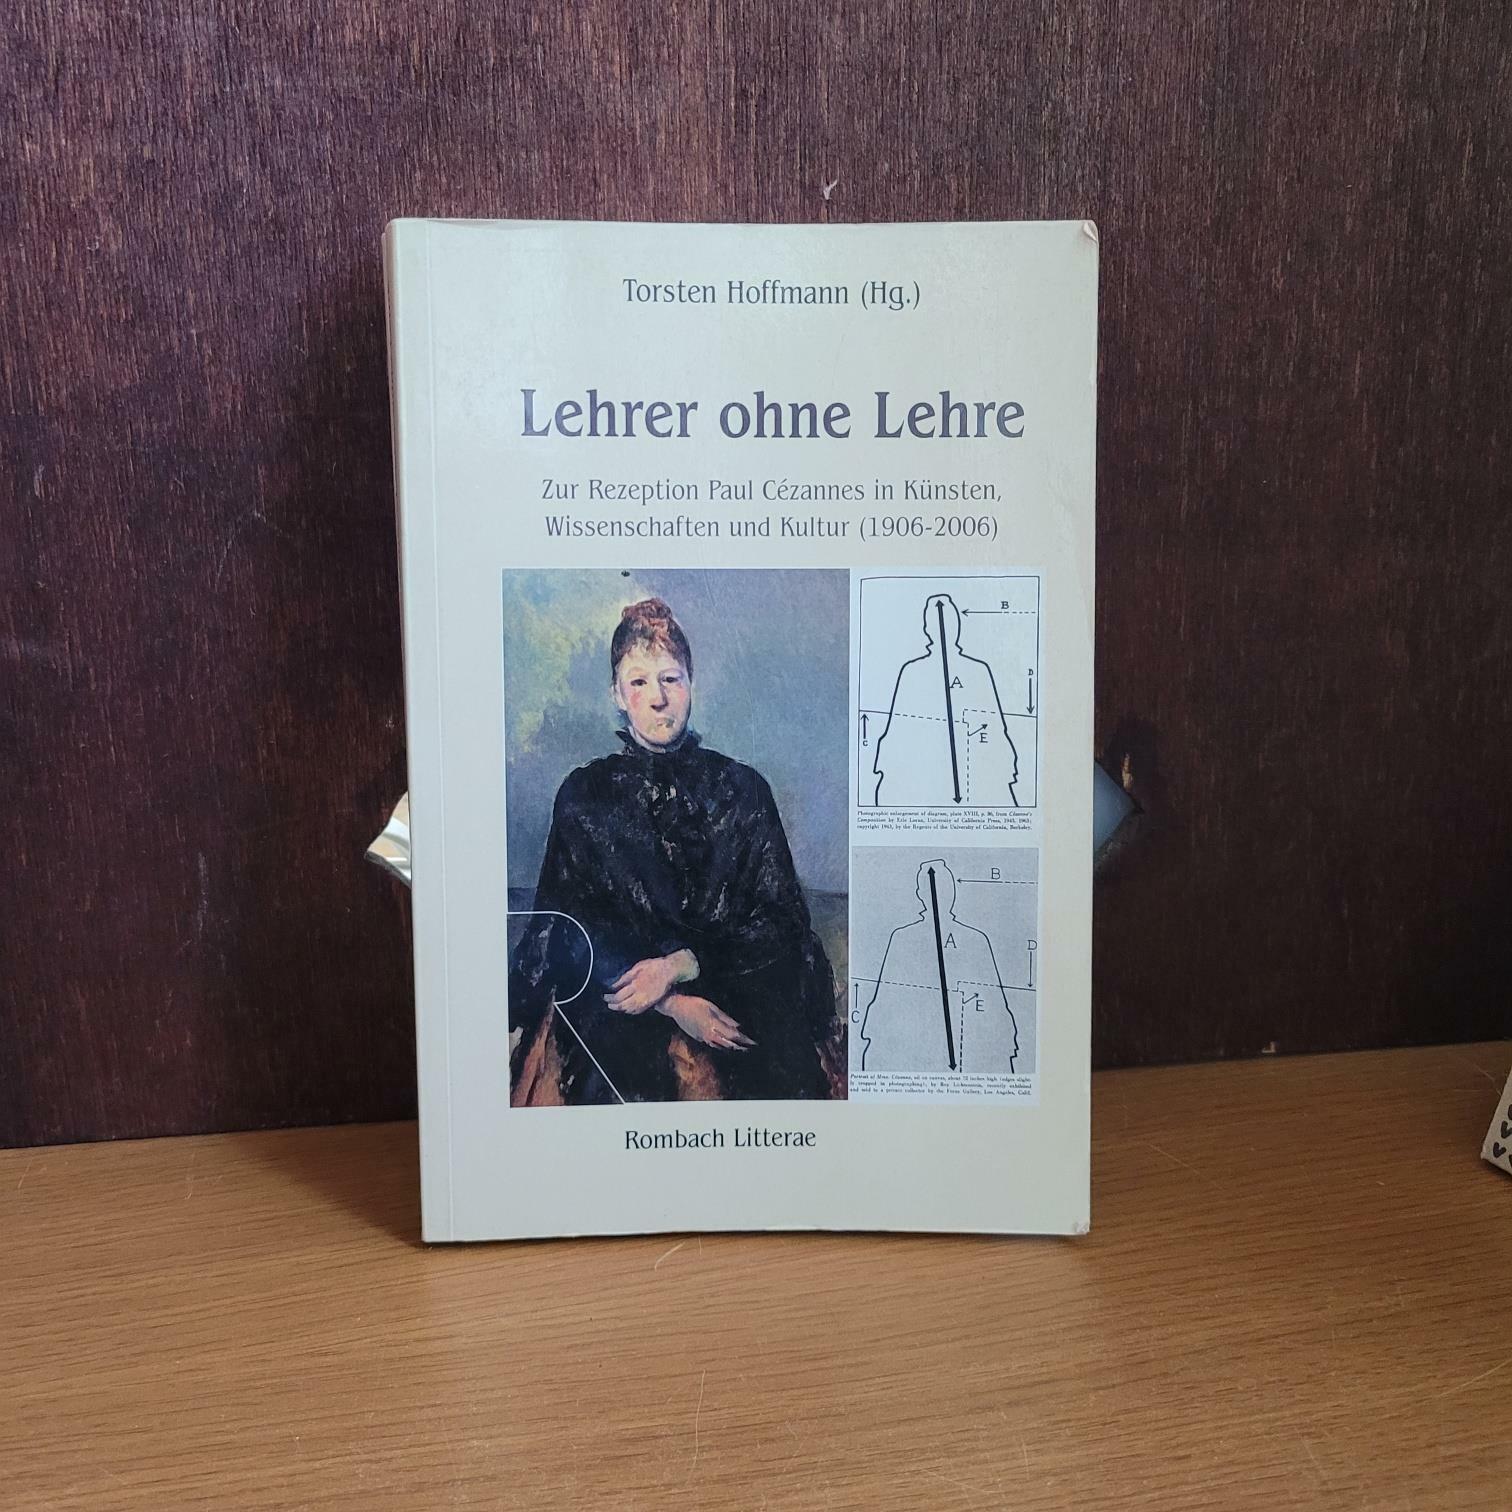 [중고] Rombach Litterae) Torsten Hoffmann Lehrer ohne Lehre [중급/실사진 참고] (paperback)